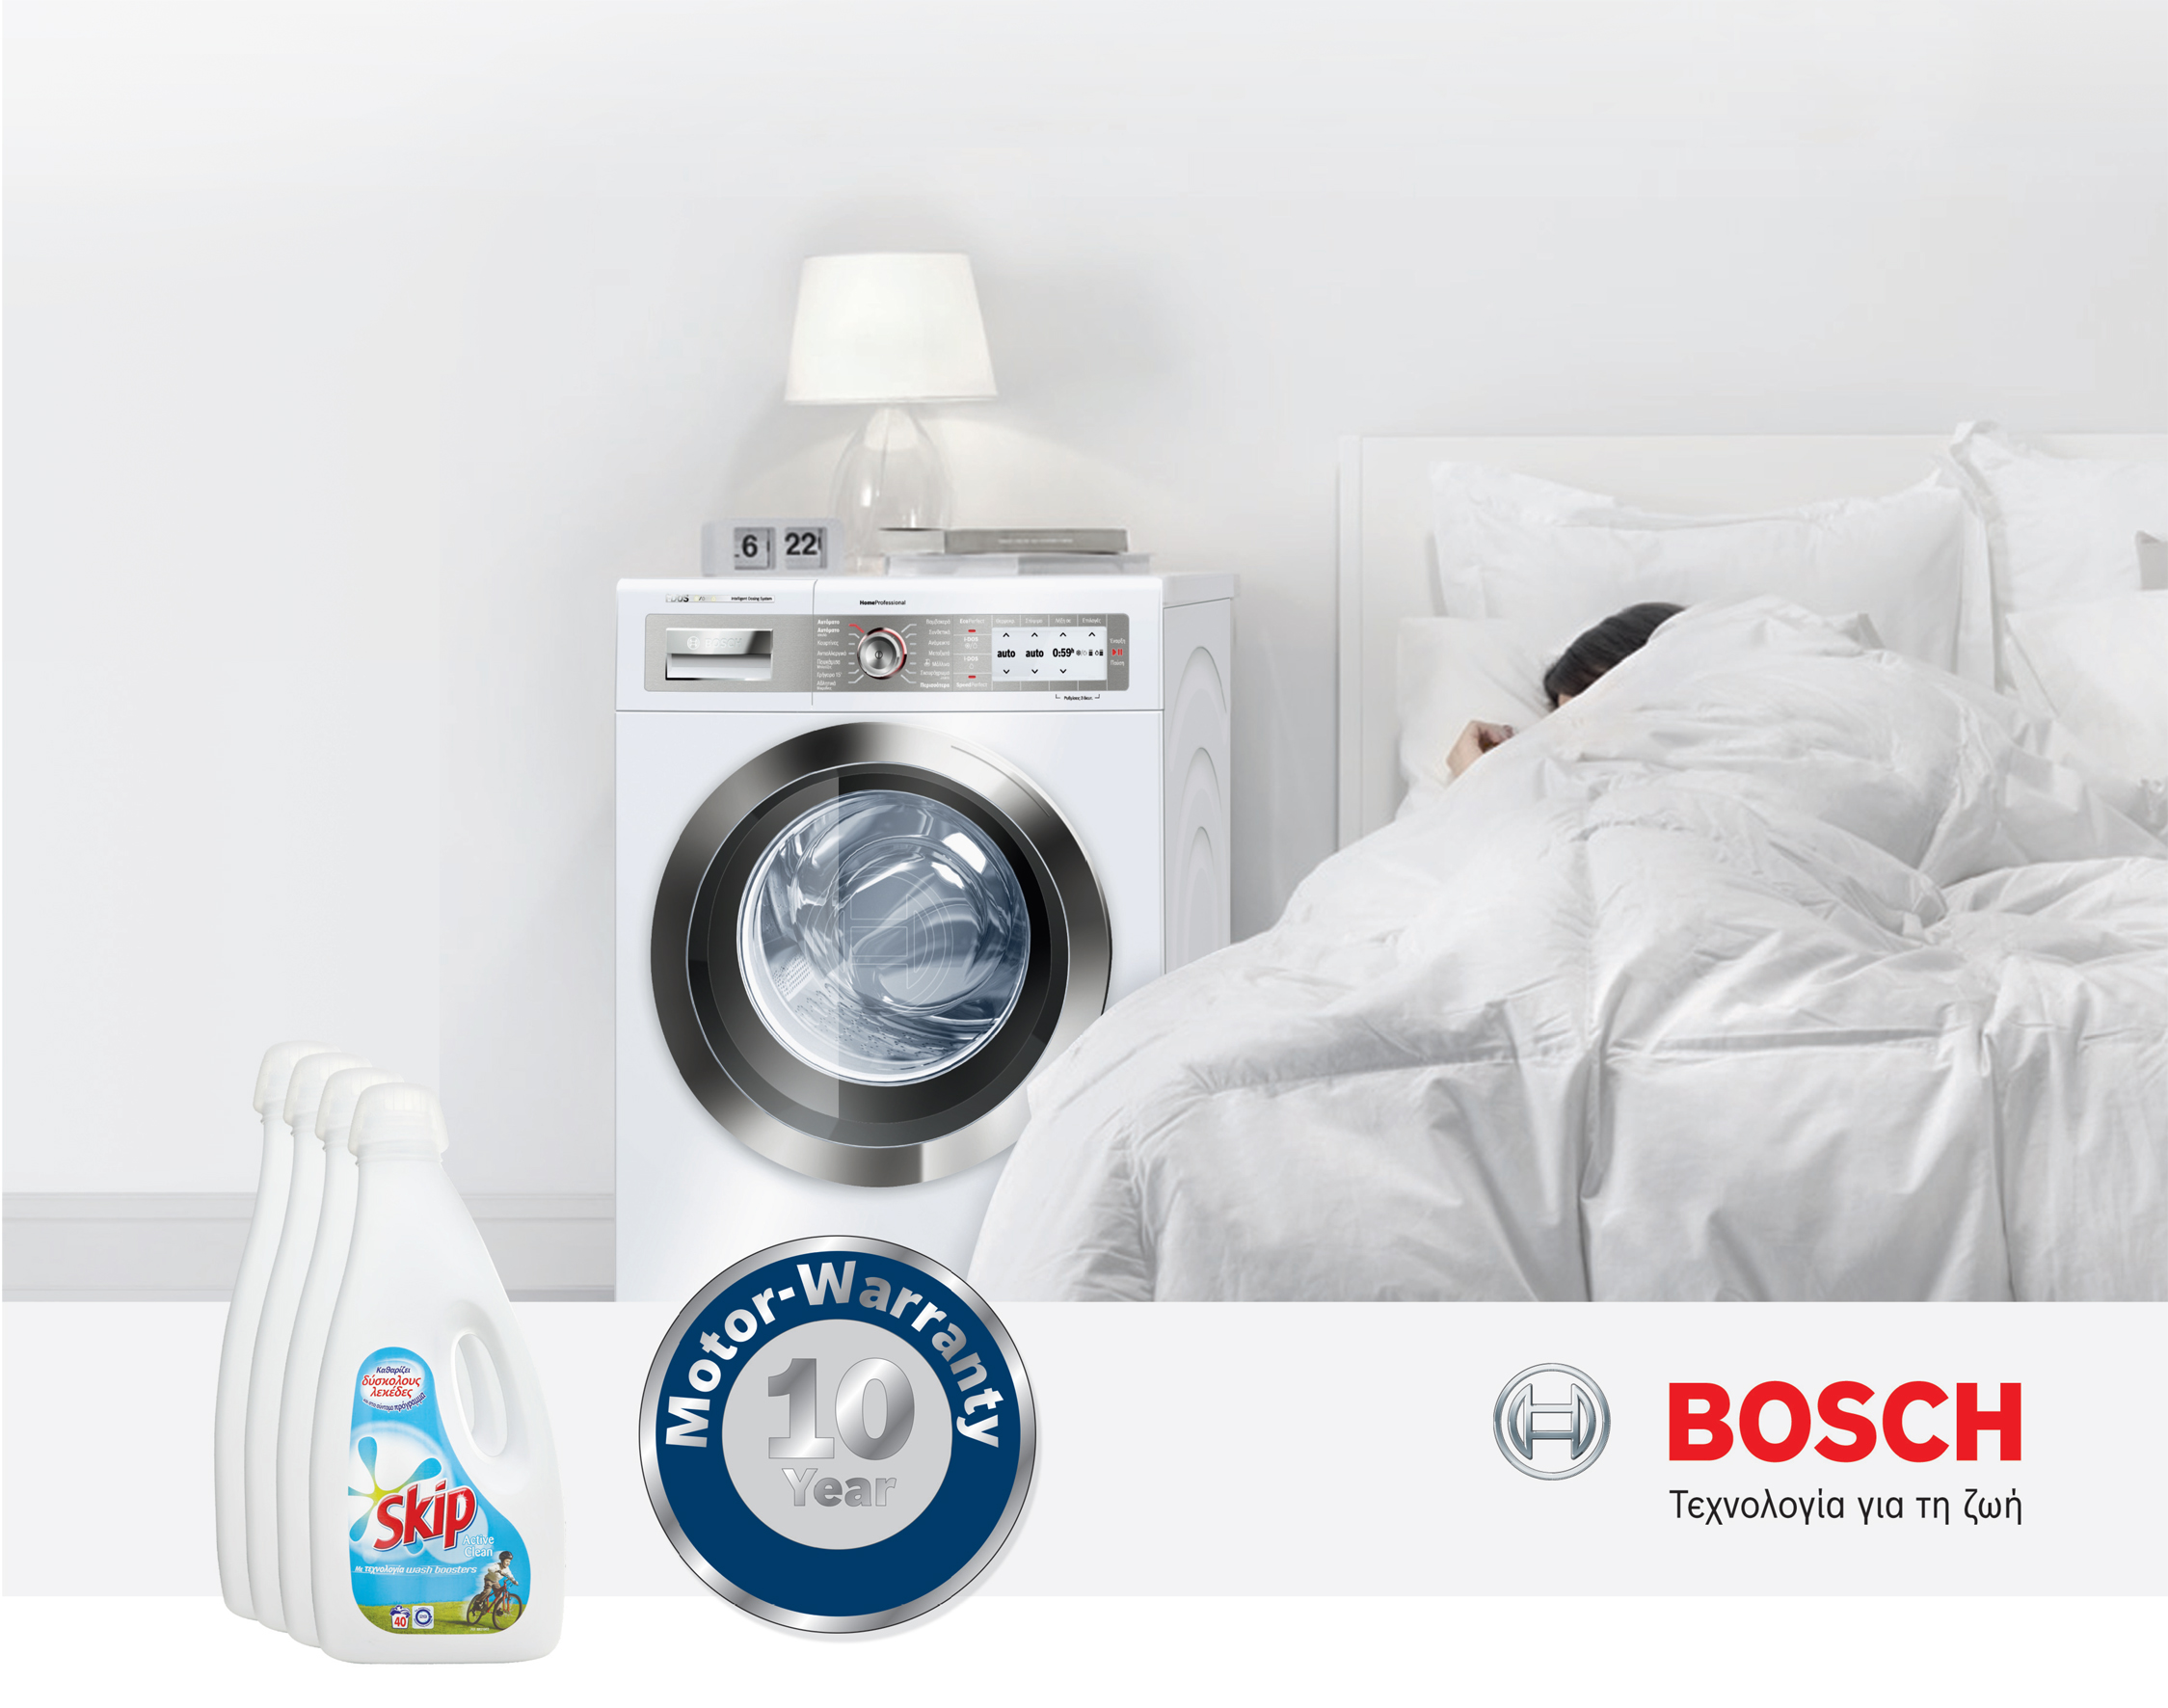 Πλυντήρια ρούχων Bosch με EcoSilence Drive